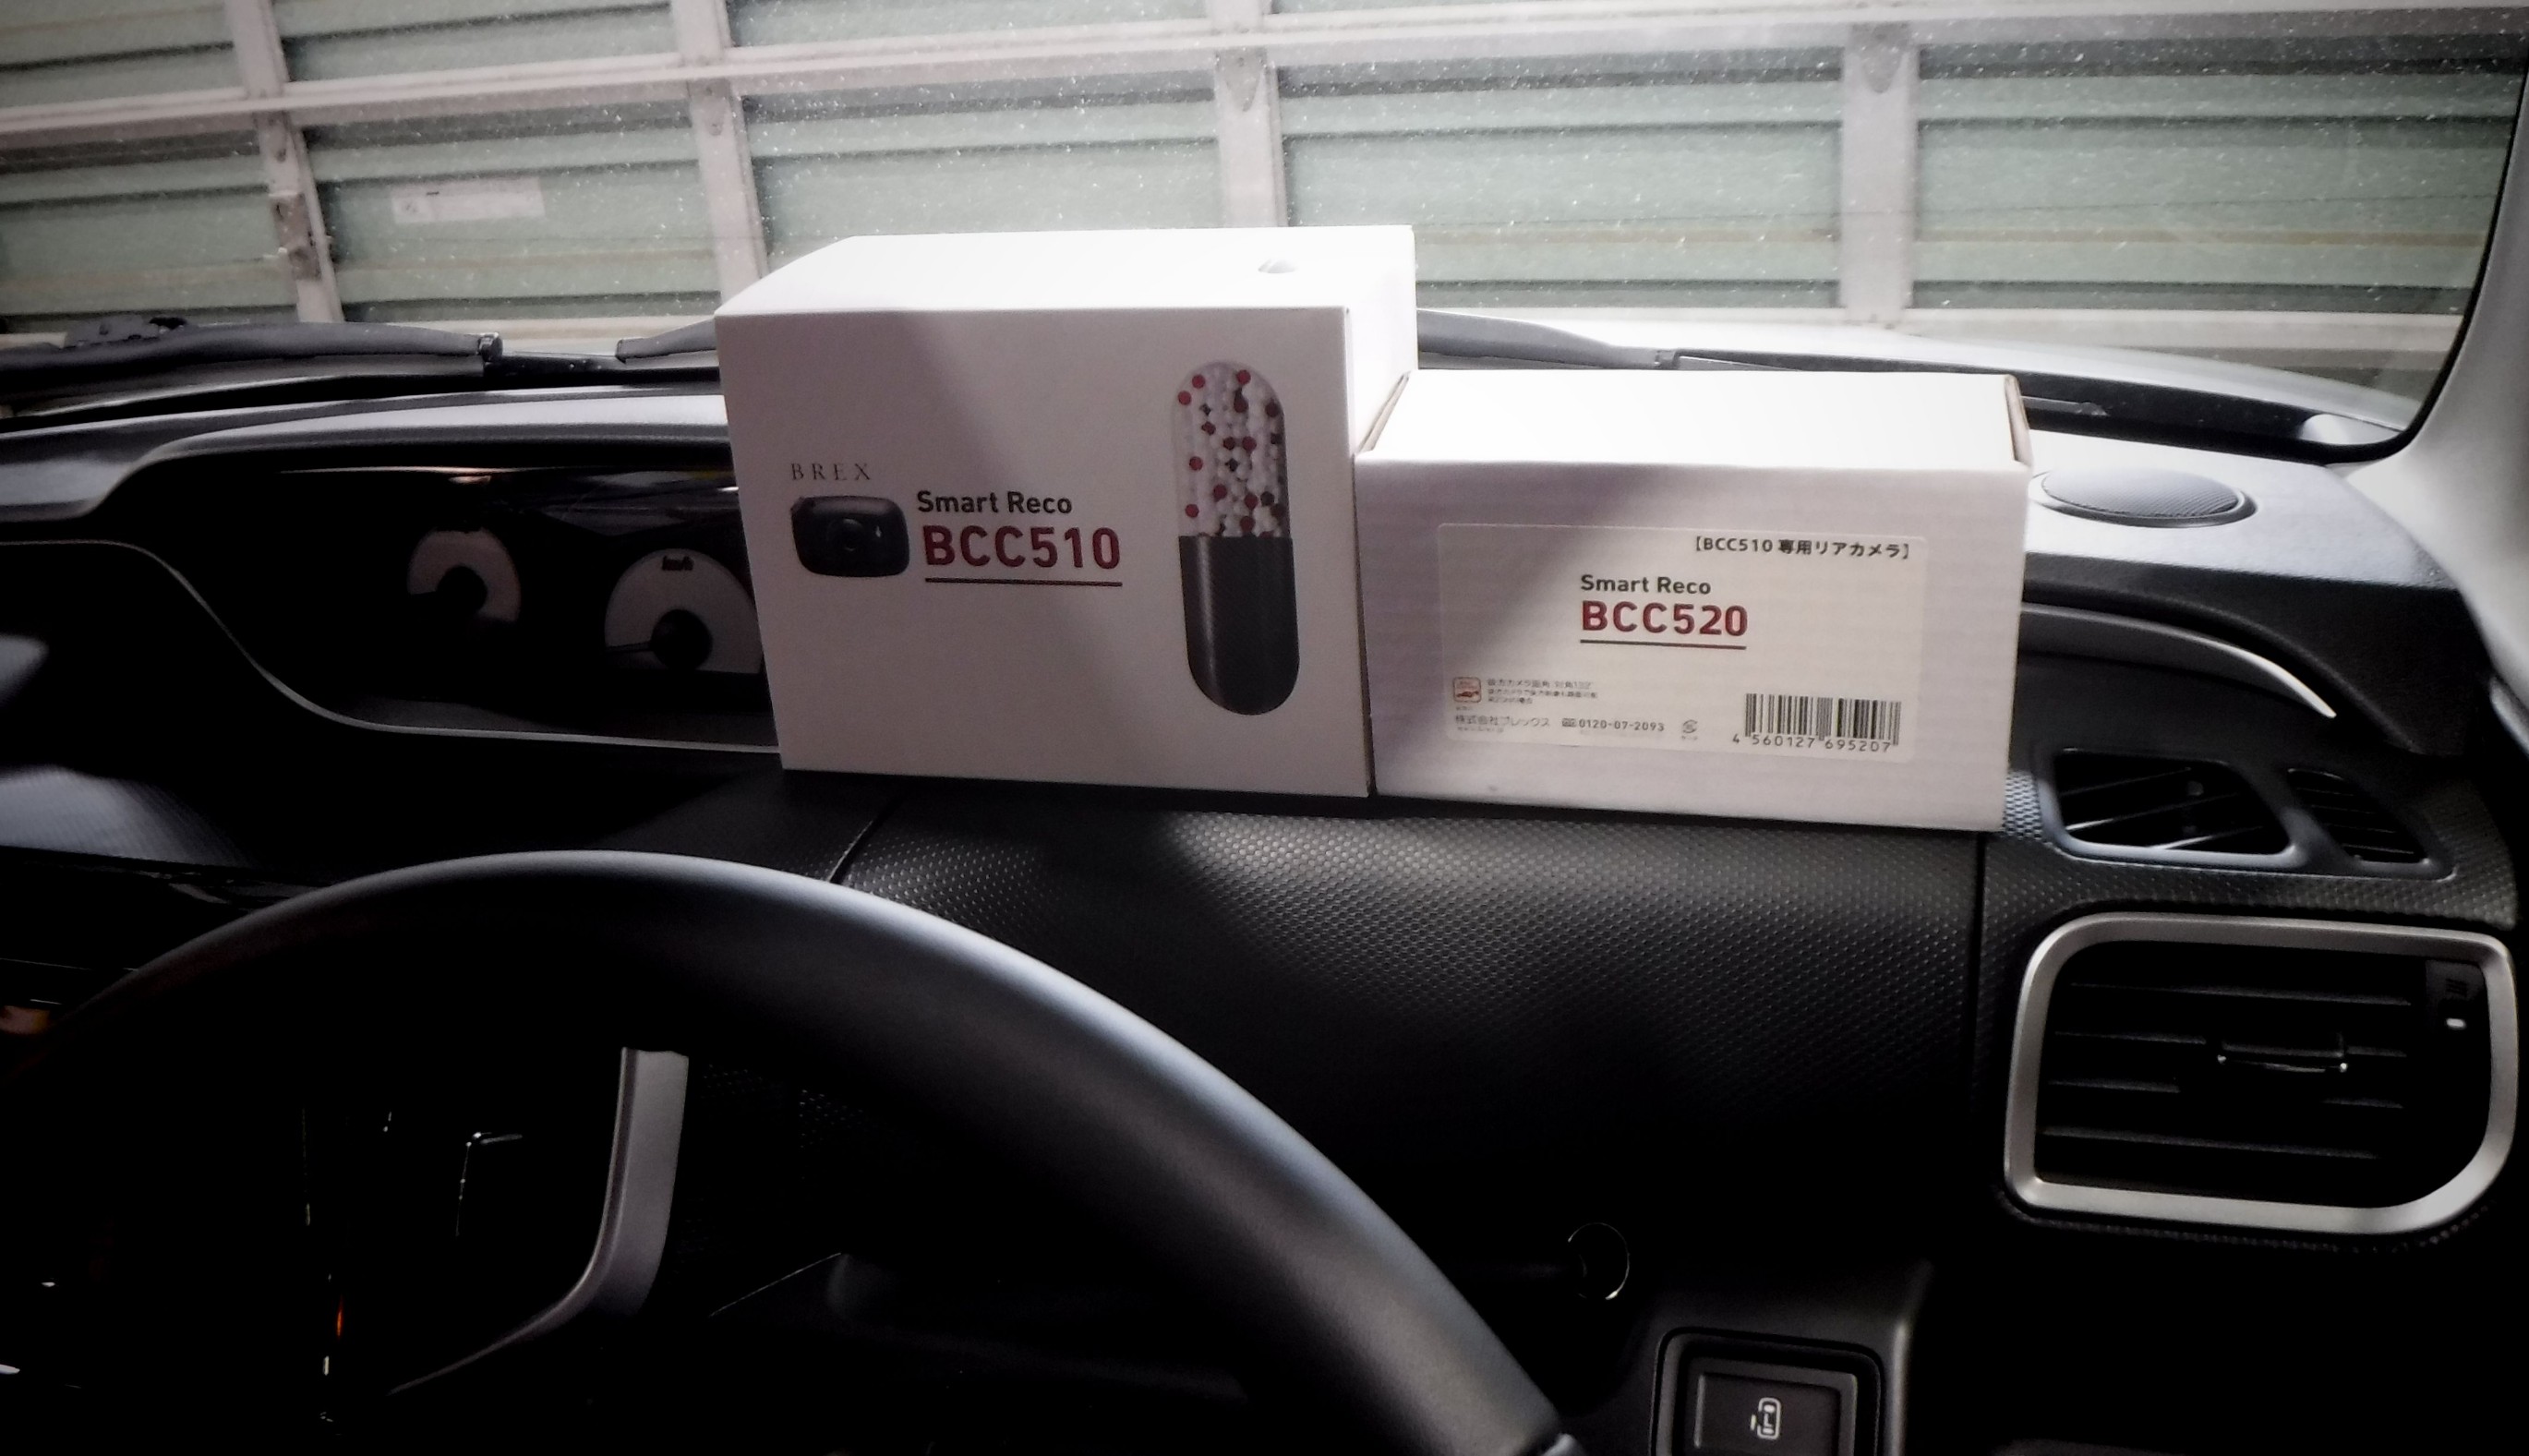 Brex ドライブレコーダー Smart Reco c510 リアカメラ c5 取付 スズキ ソリオ バンディット スズキ ソリオバンディットhybrid Av カーナビ ドライブレコーダー Etc Av カーナビ ドライブレコーダー Etc オーディオ取付 フィールの日記